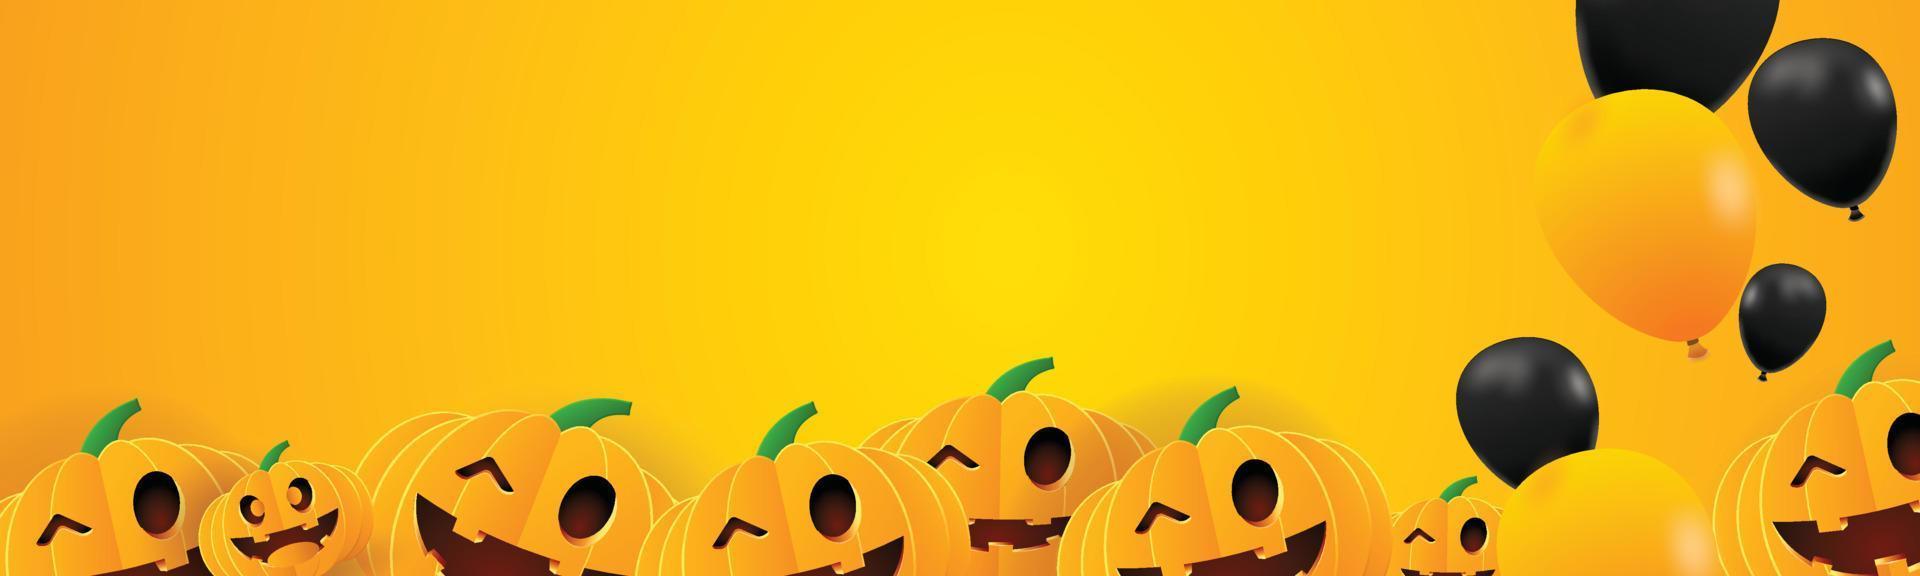 hallo halloween hintergrund orange gelbe seite benner space Kürbisse im oktober herbstsaison posterkarte vektor